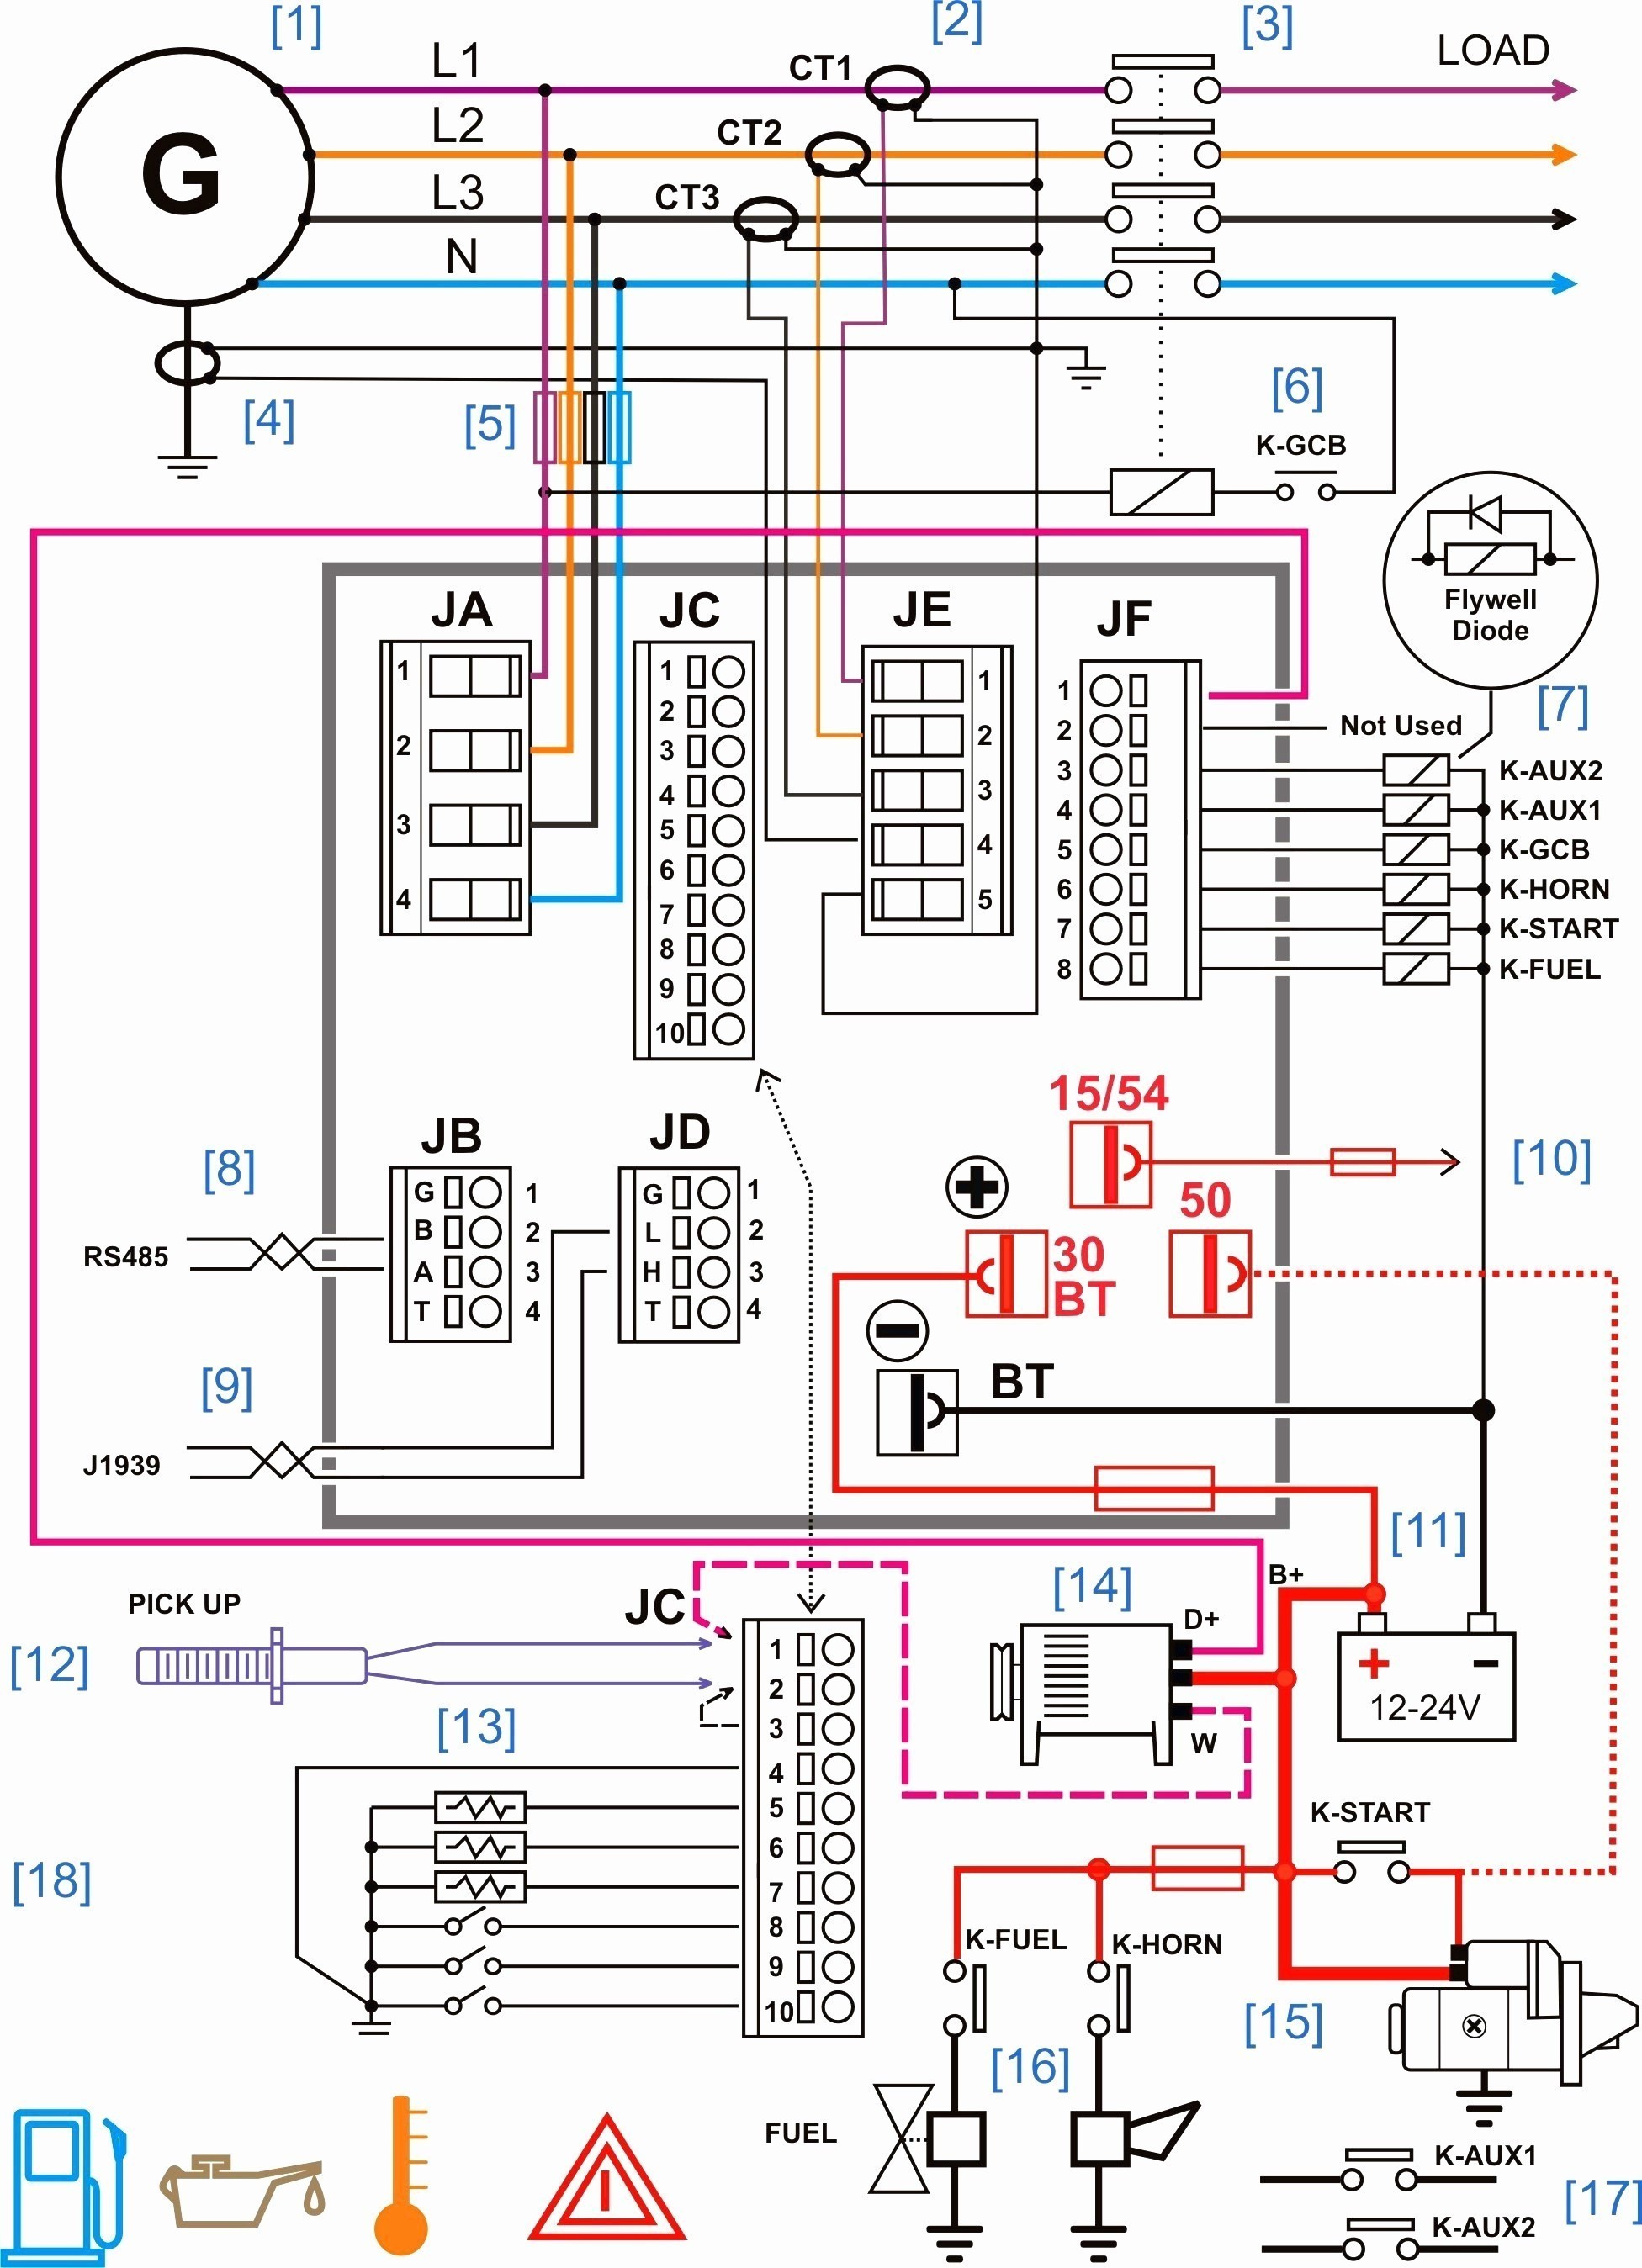 Car sound Wiring Diagram Understanding Automotive Wiring Diagram Inspirationa Car Wiring Of Car sound Wiring Diagram